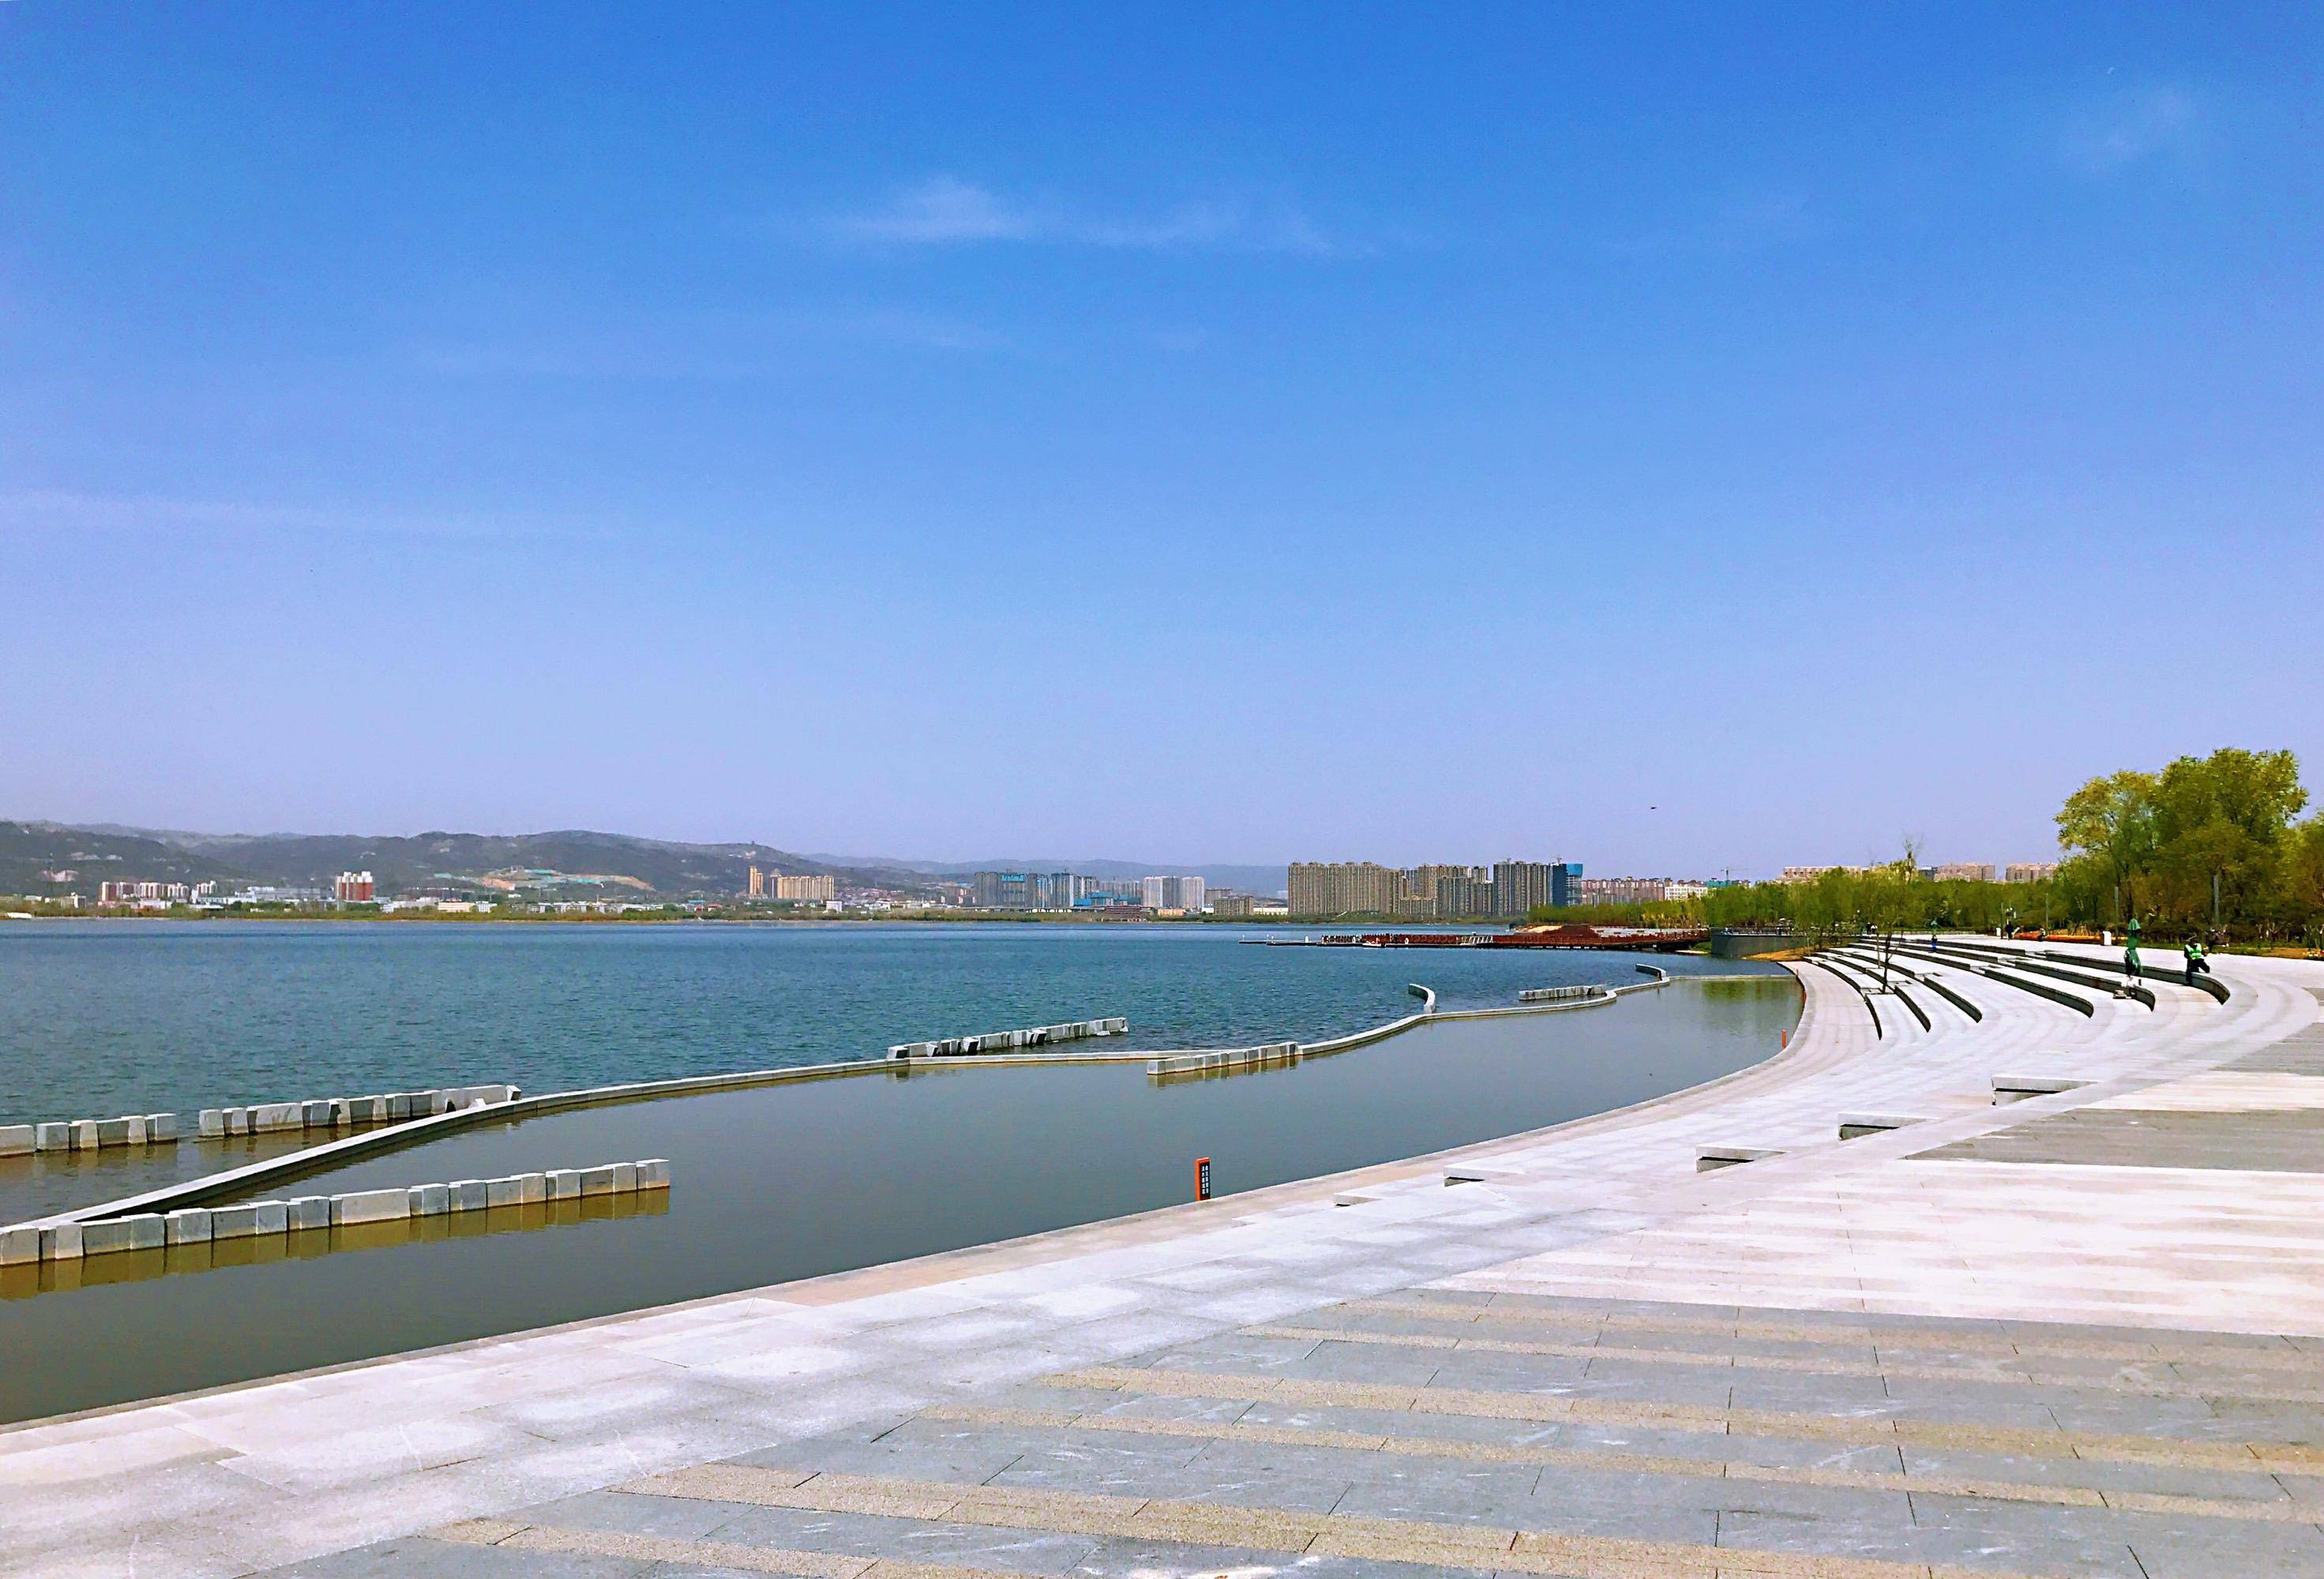 华北地区第一大人工湖,素称中国北湖,是太原市的母亲湖